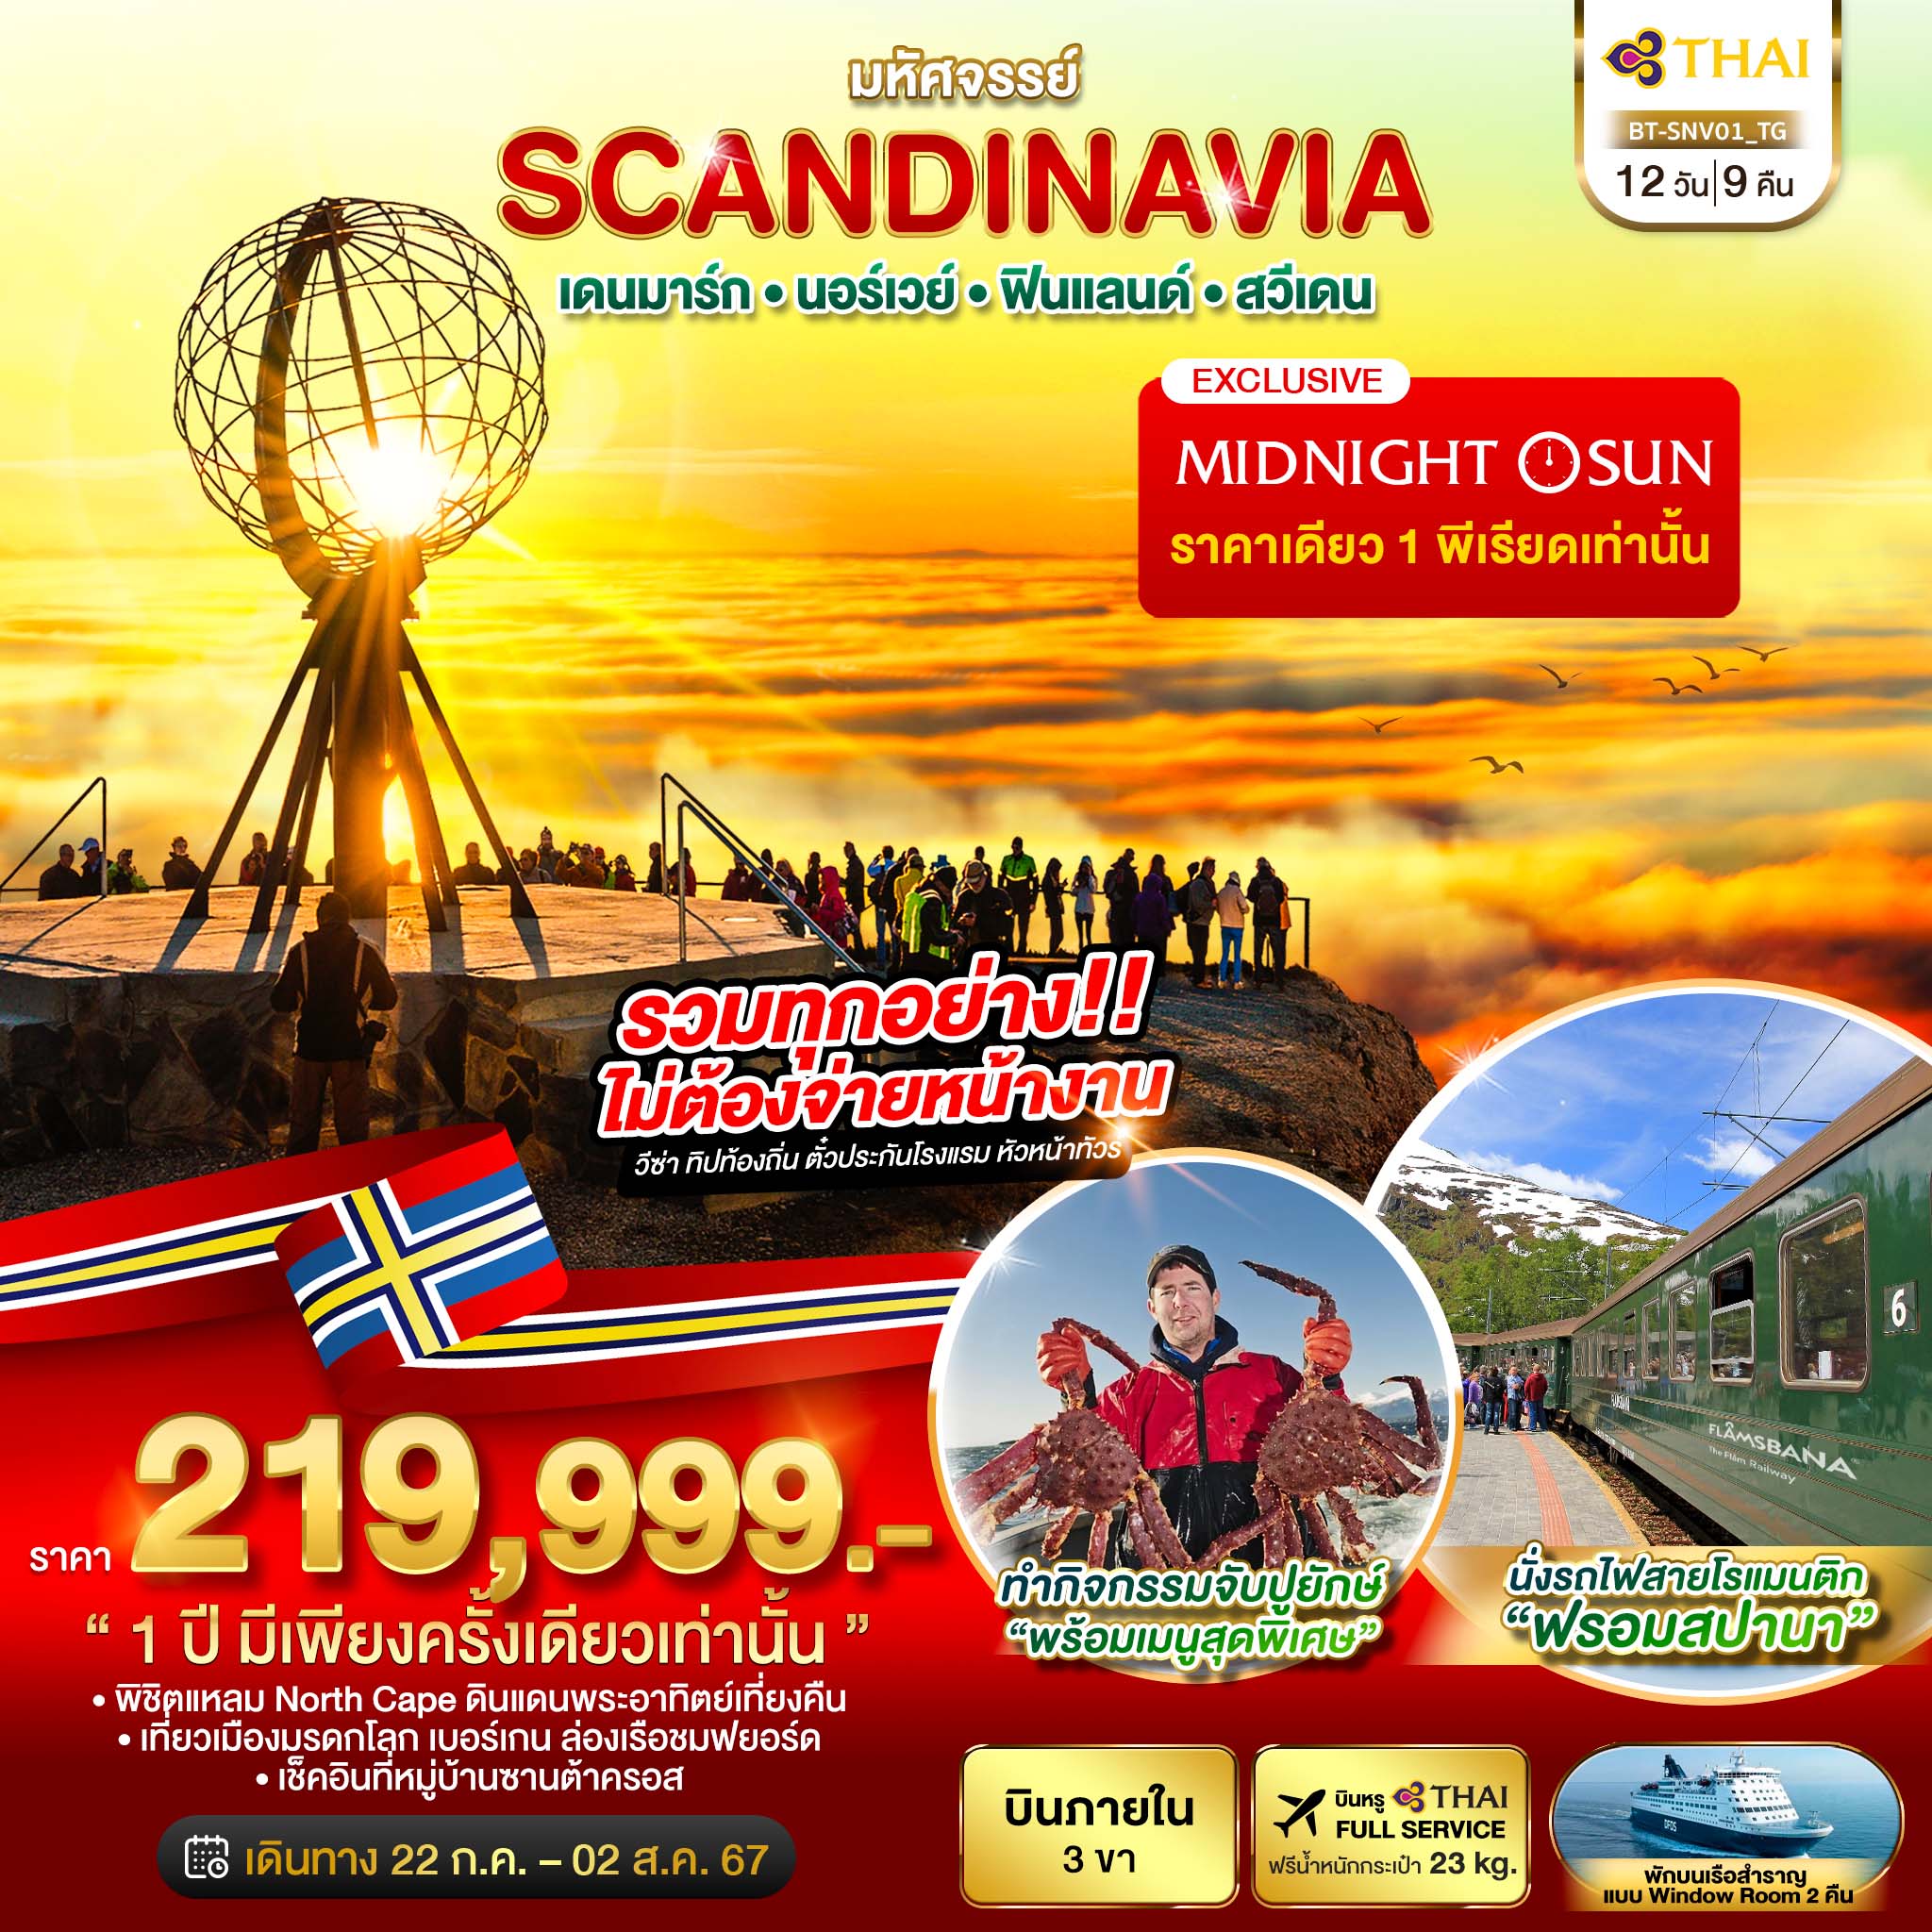 ทัวร์สแกนดิเนเวีย มหัศจรรย์ SCANDINAVIA เดนมาร์ก นอร์เวย์ ฟินแลนด์ สวีเดน 12วัน 9คืน (TG)